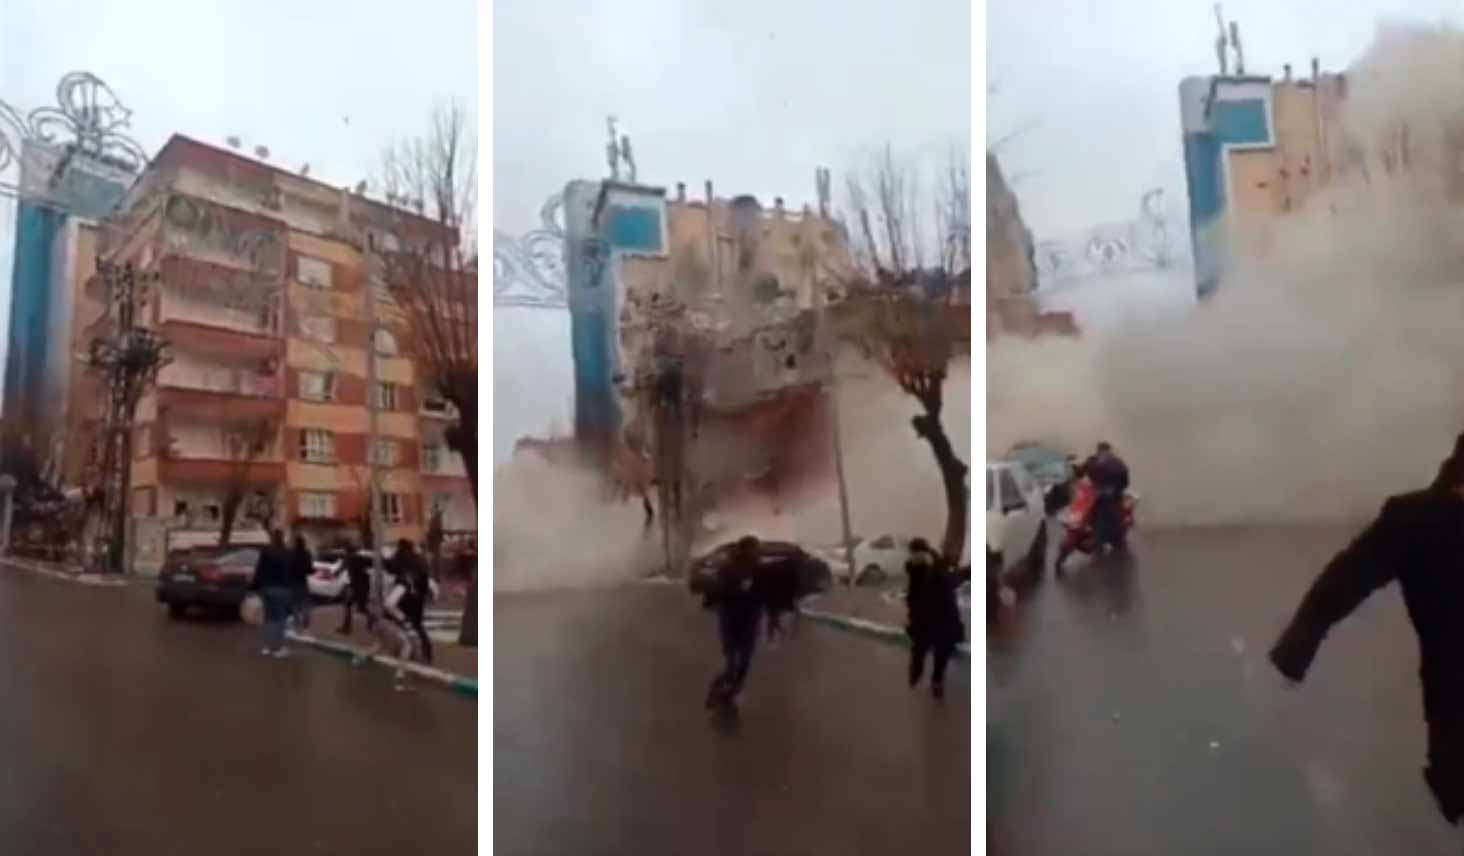 Vídeo chocante mostra momento em que prédio desaba após terremoto na Turquia